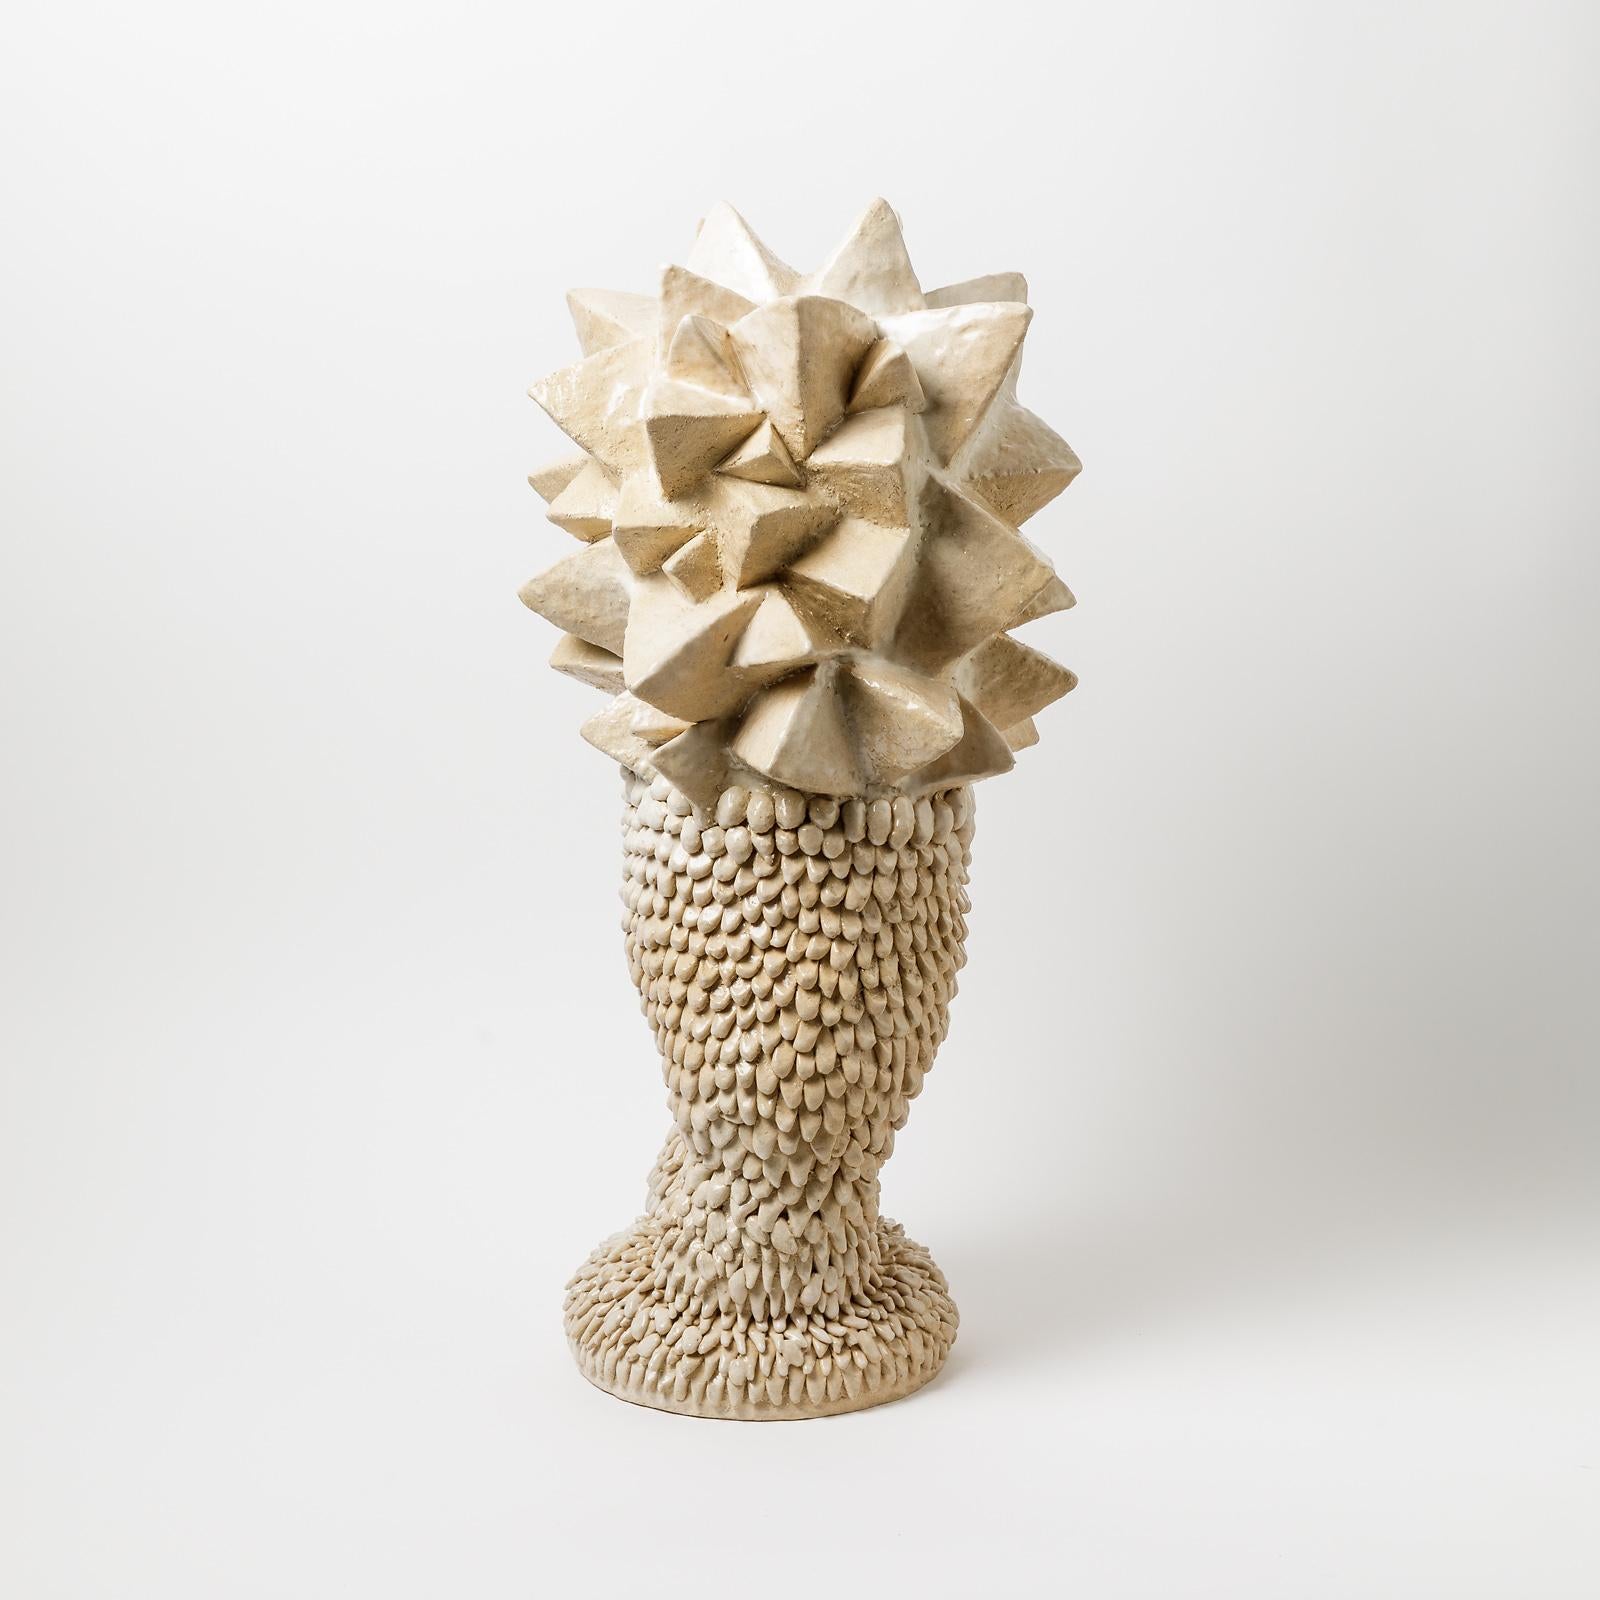 Beaux Arts Ceramic Sculpture by Laurent Dufour, Signed, 2020